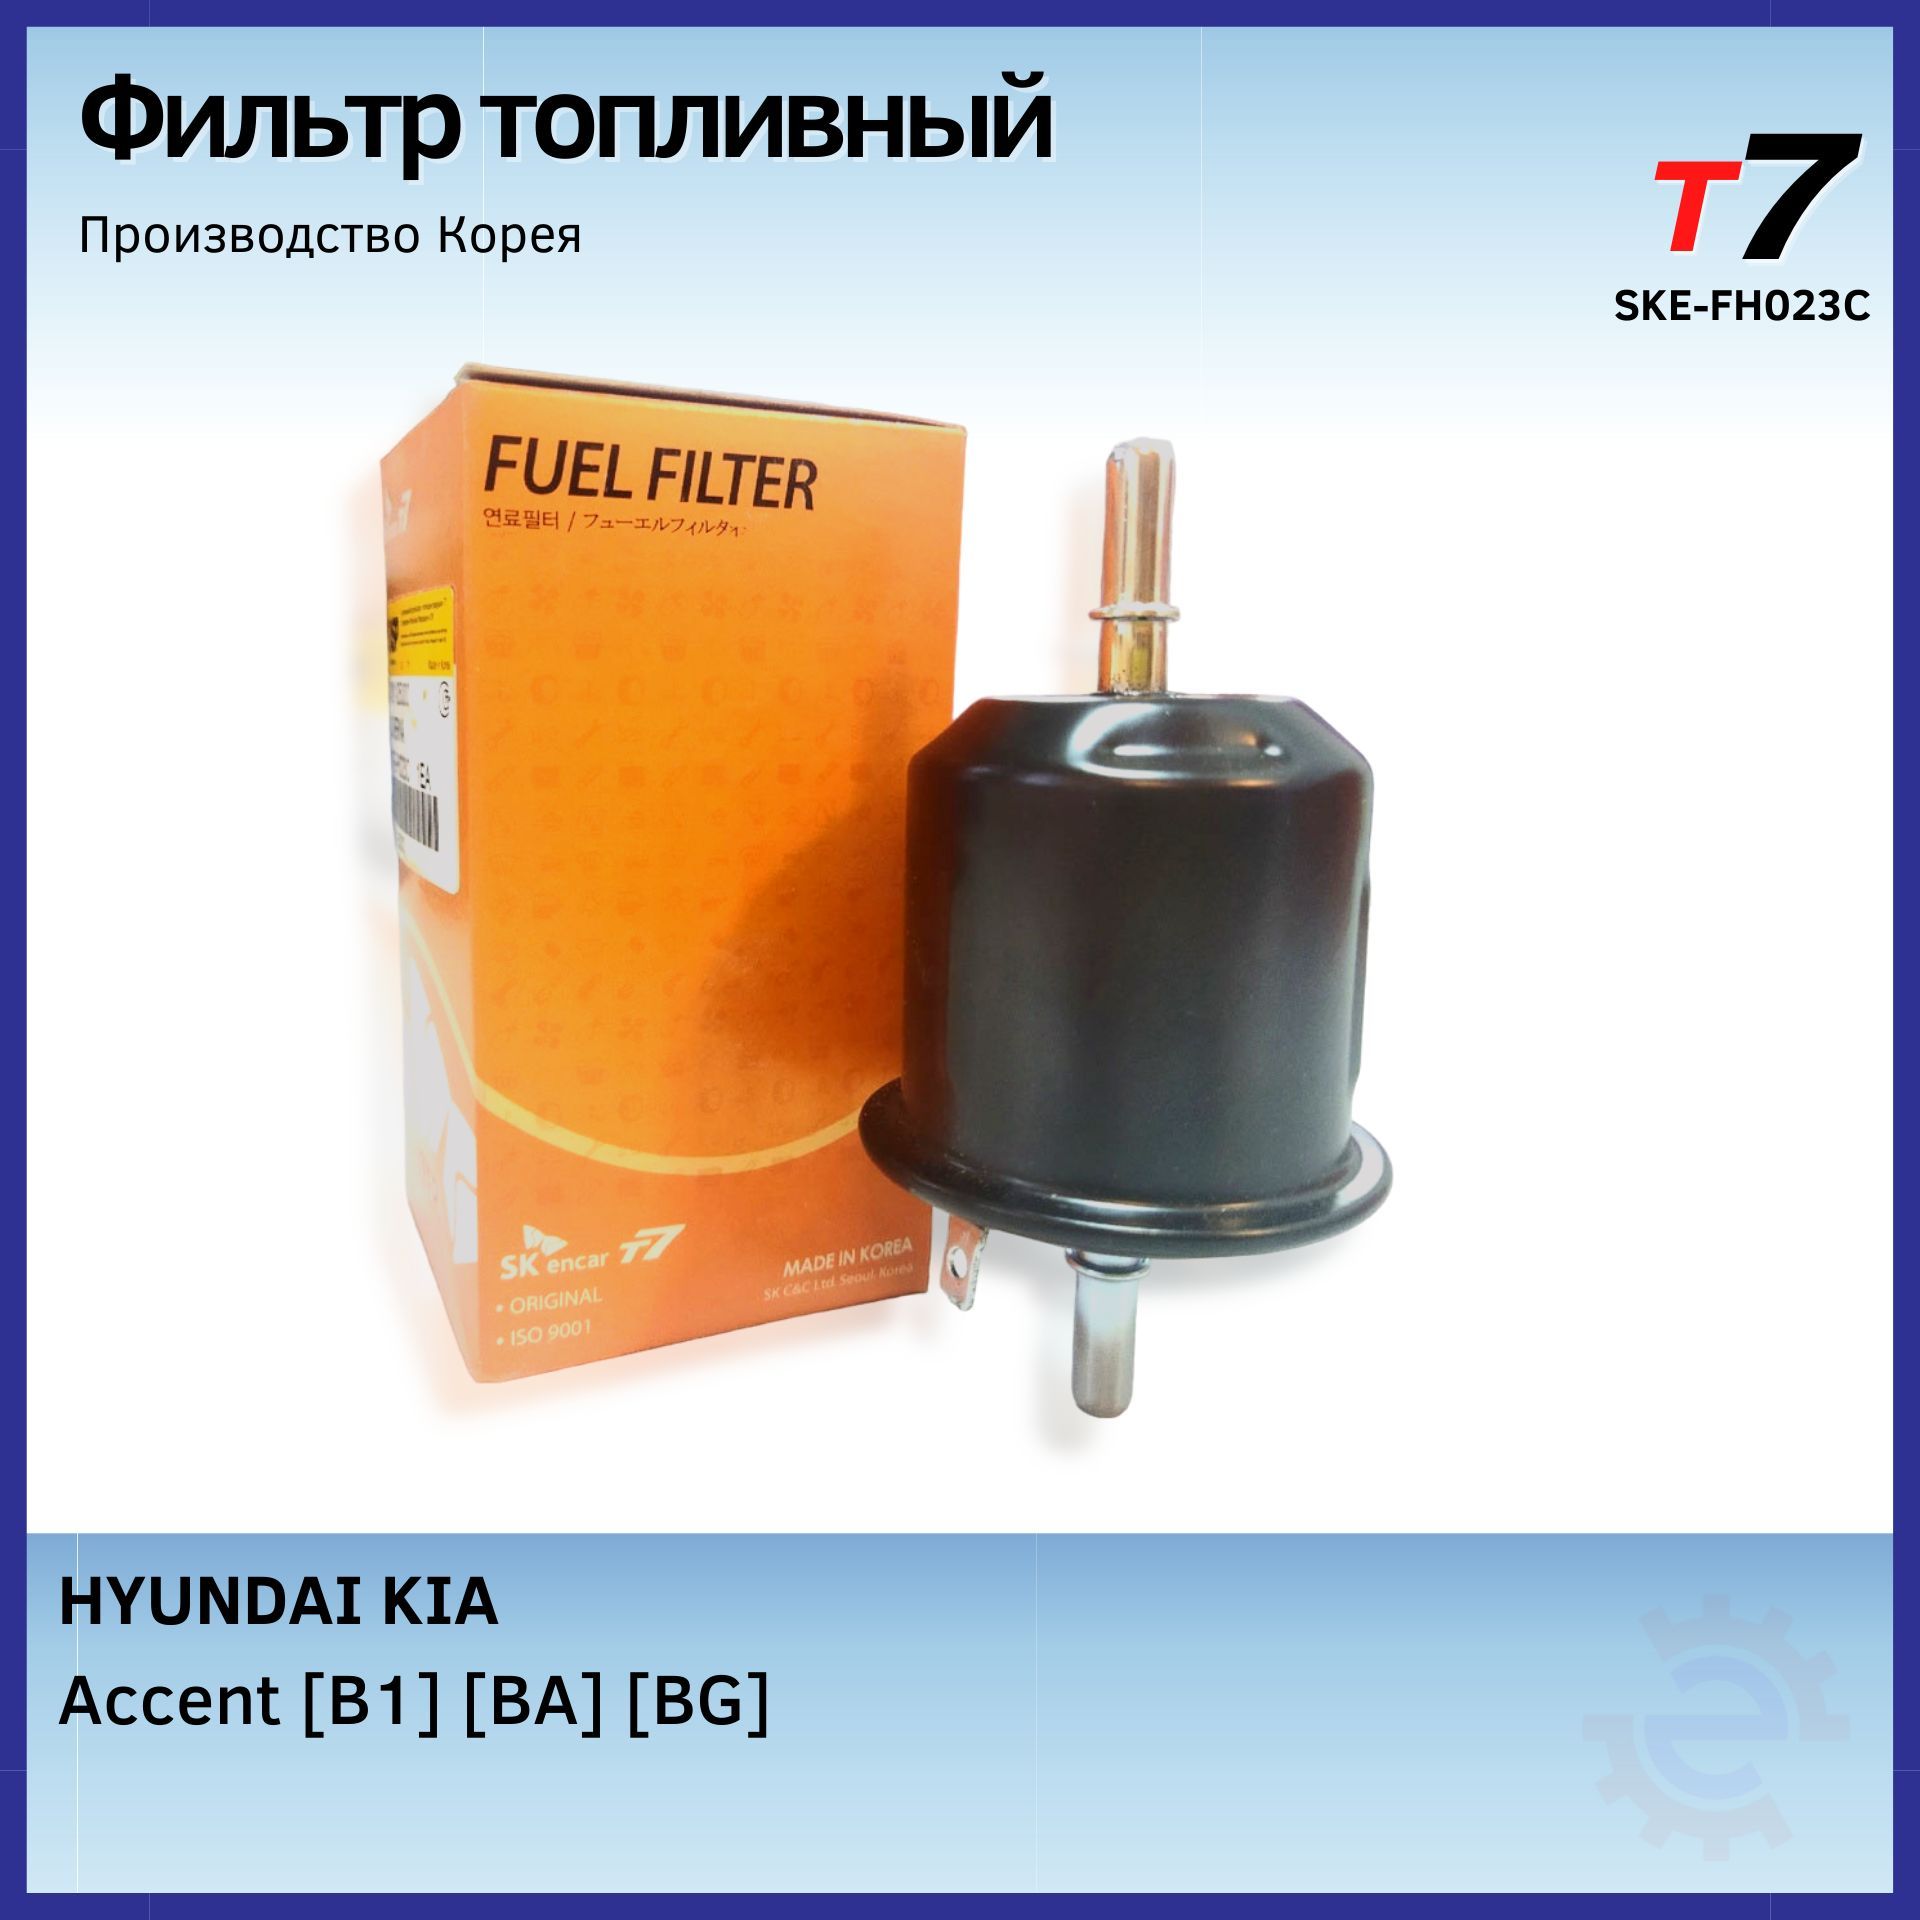 Фильтр топливный/T7 + Hyundai Accent /SKE-FH023C